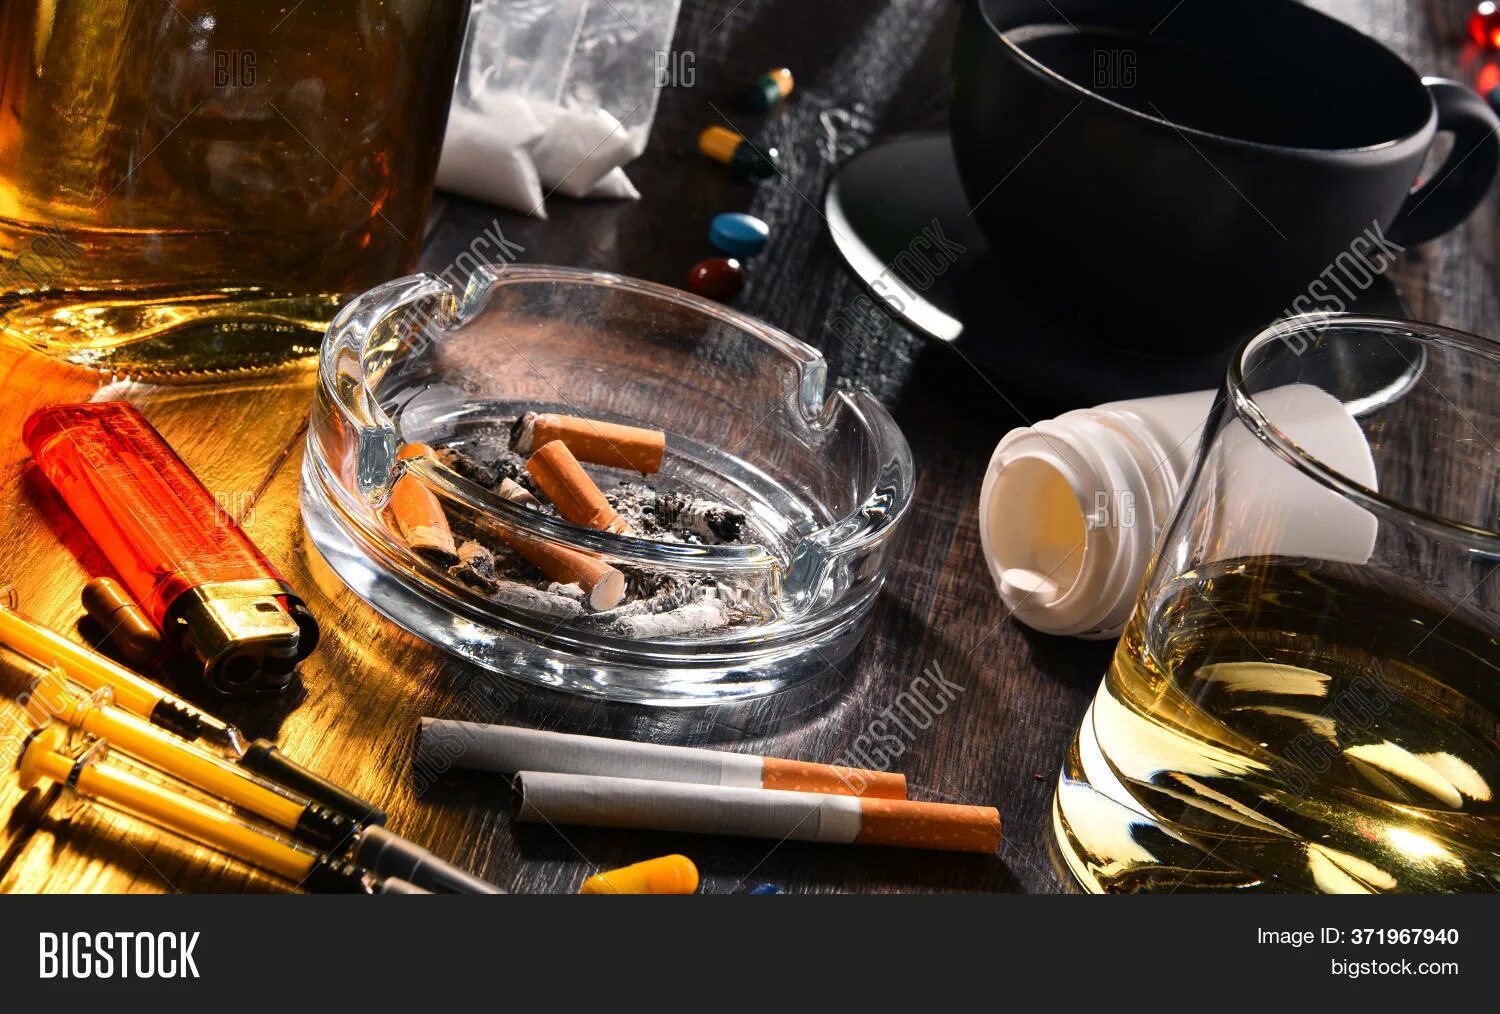 Виски орган человека. Кофе алкоголь сигареты. Алкоголь, лекарства, сигареты. Алкоголь и сигареты картинки. Стол с алкоголем сигаретами и наркотой.